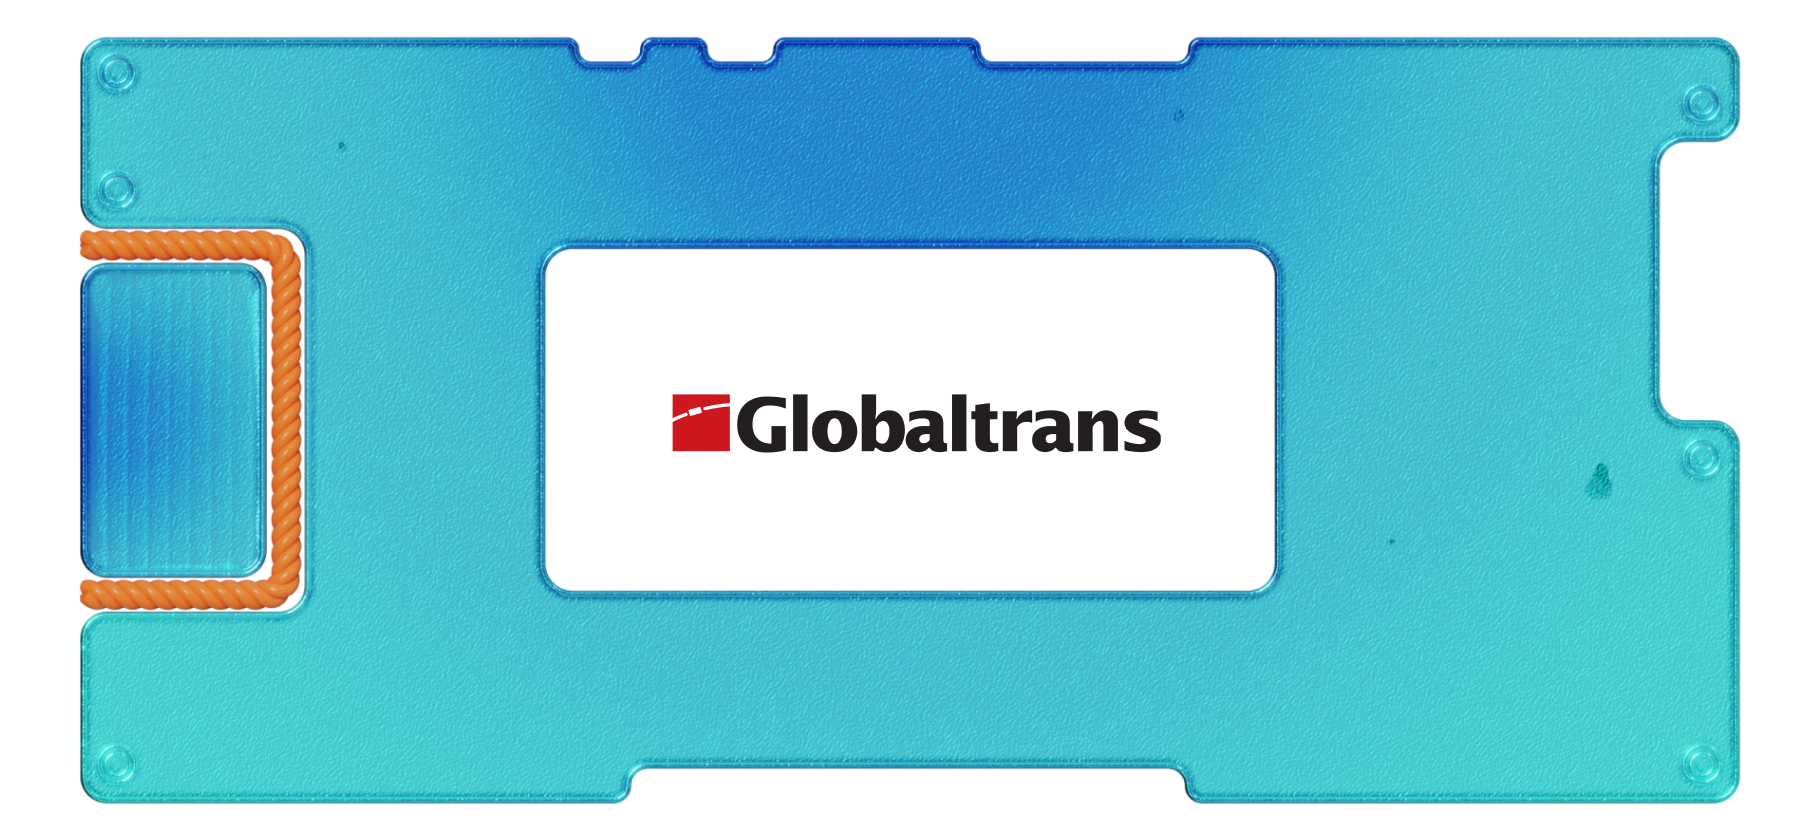 Обзор Globaltrans: инвестиции в железнодорожного перевозчика